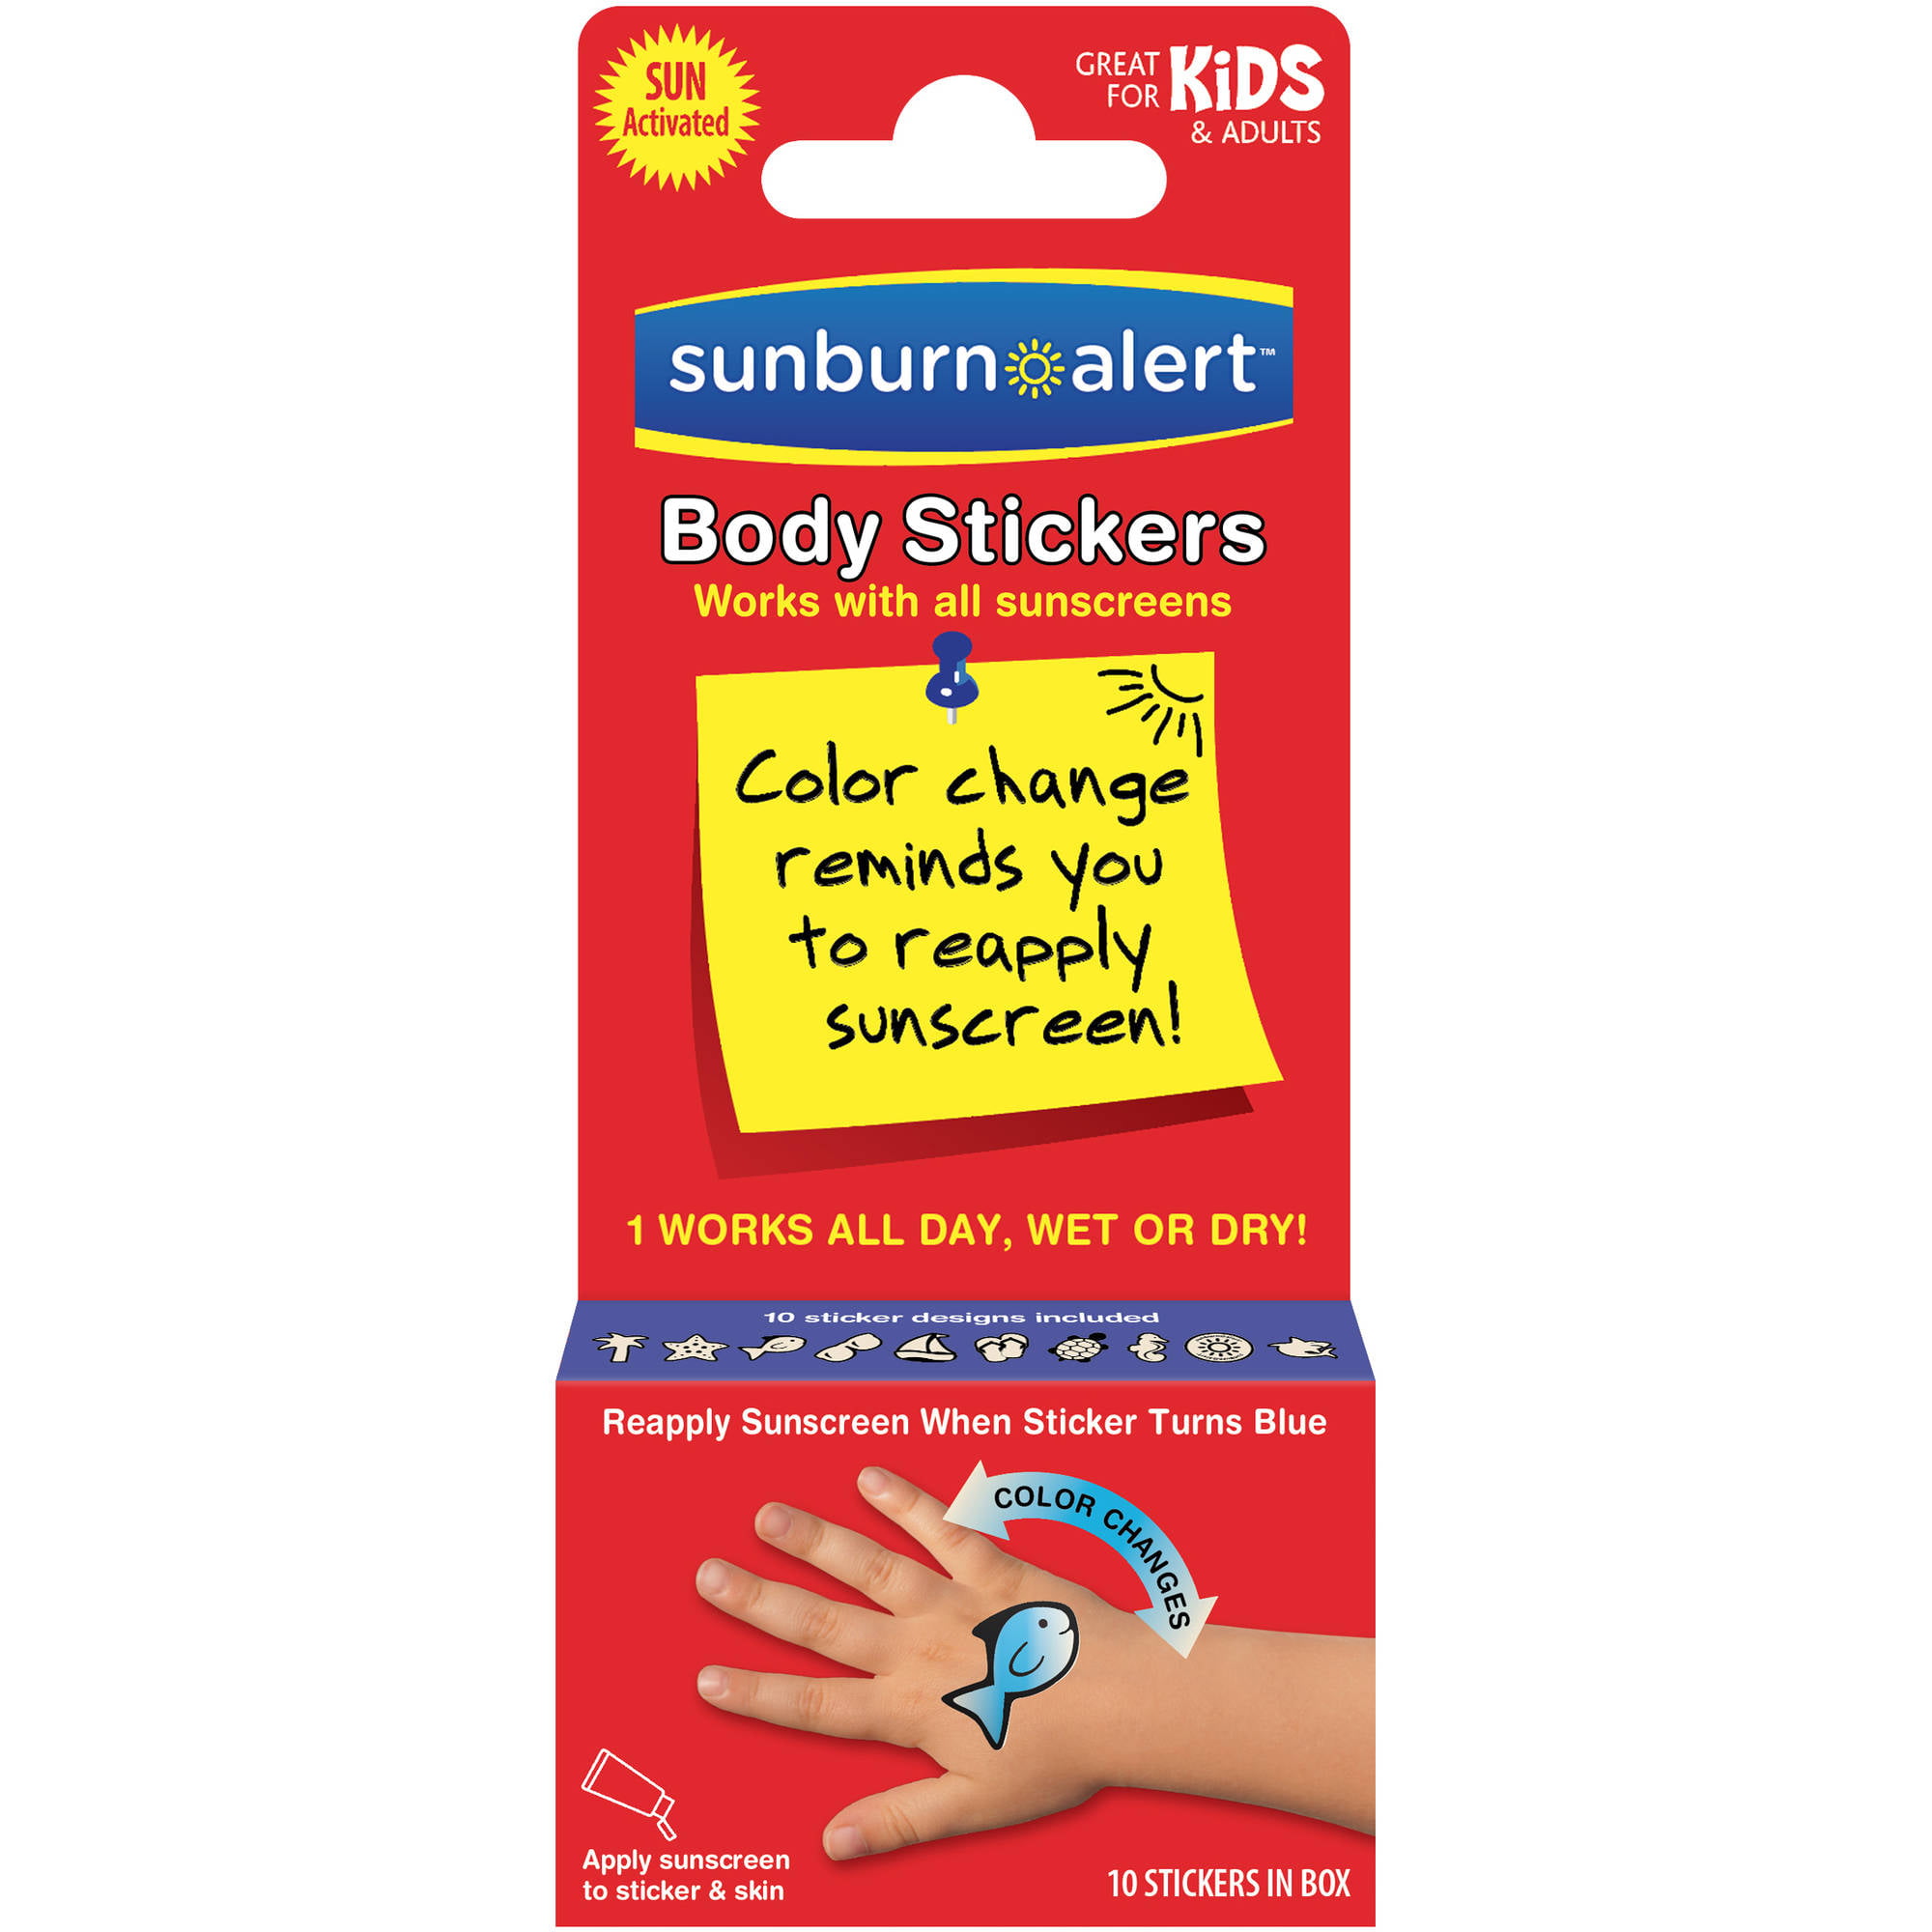 SMALL STICKERS – Sunburn Alert